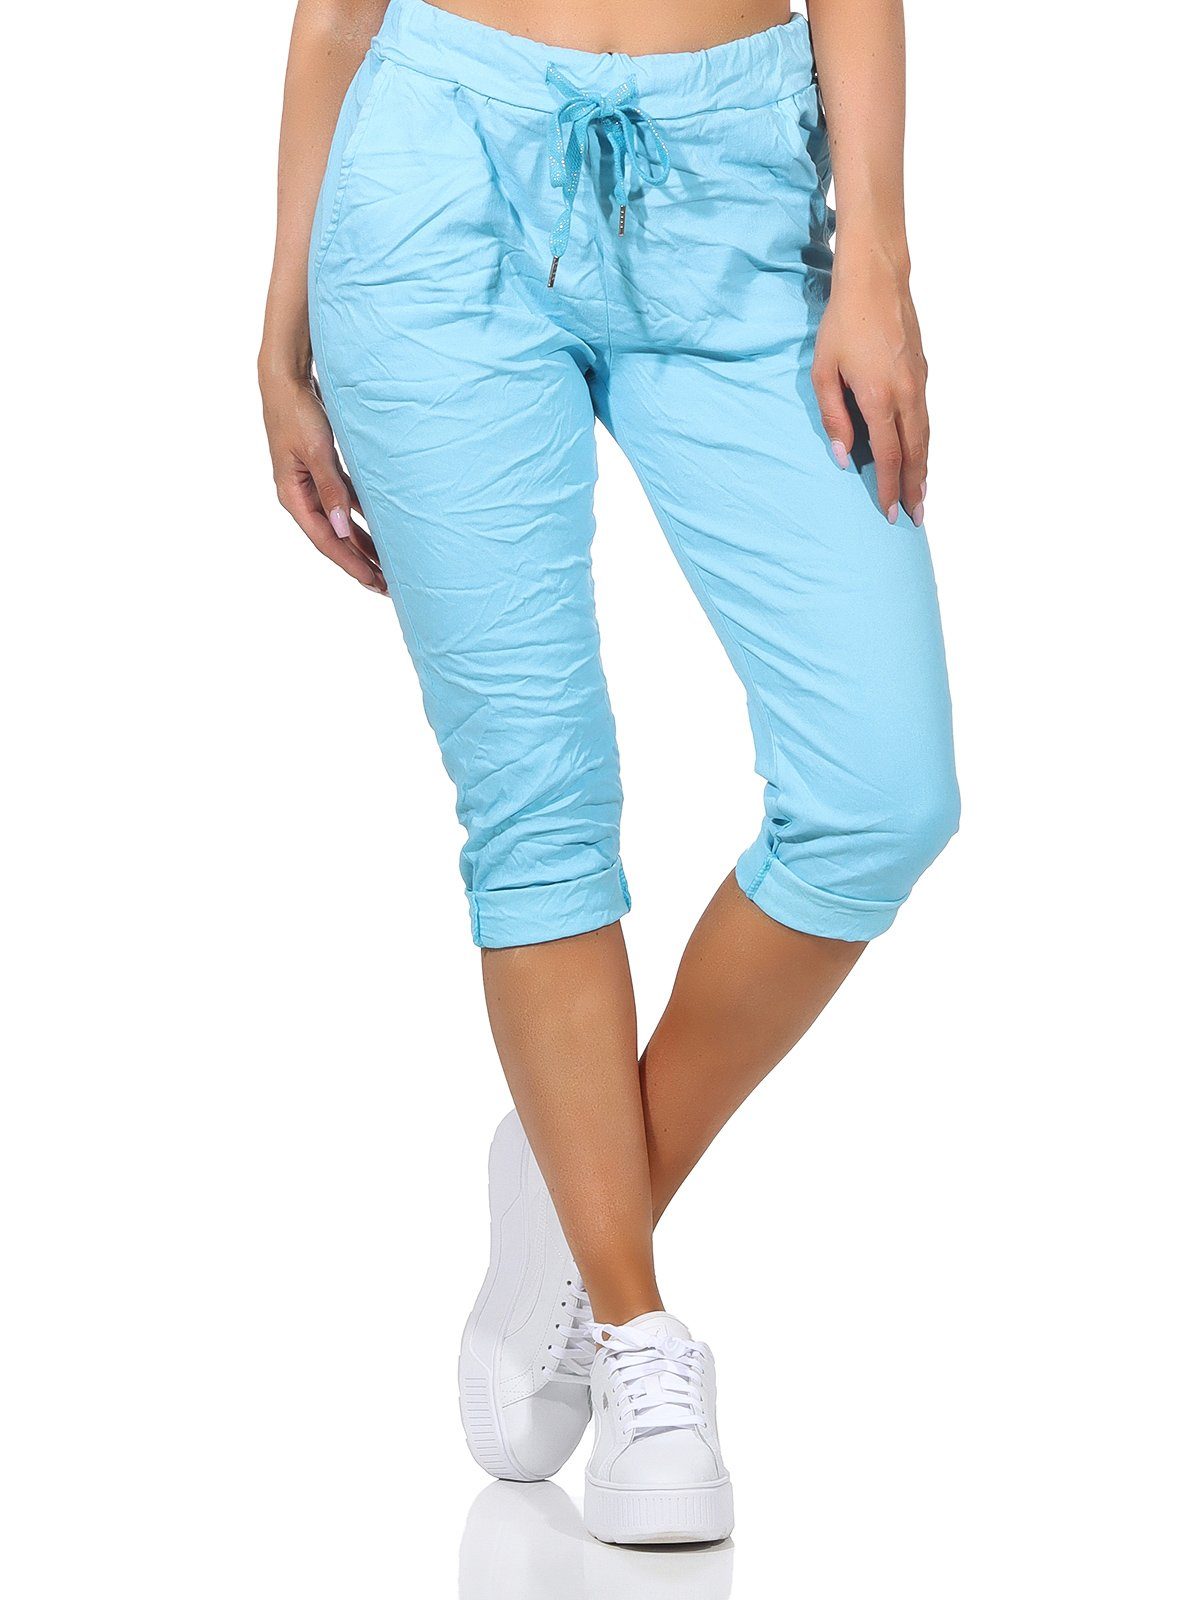 Aurela Damenmode Kordelzug, Capri 36-44 sommerlichen Sommerhose Jeans Taschen und Farben, in Damen Bermuda Hose 7/8-Hose Türkis Kurze